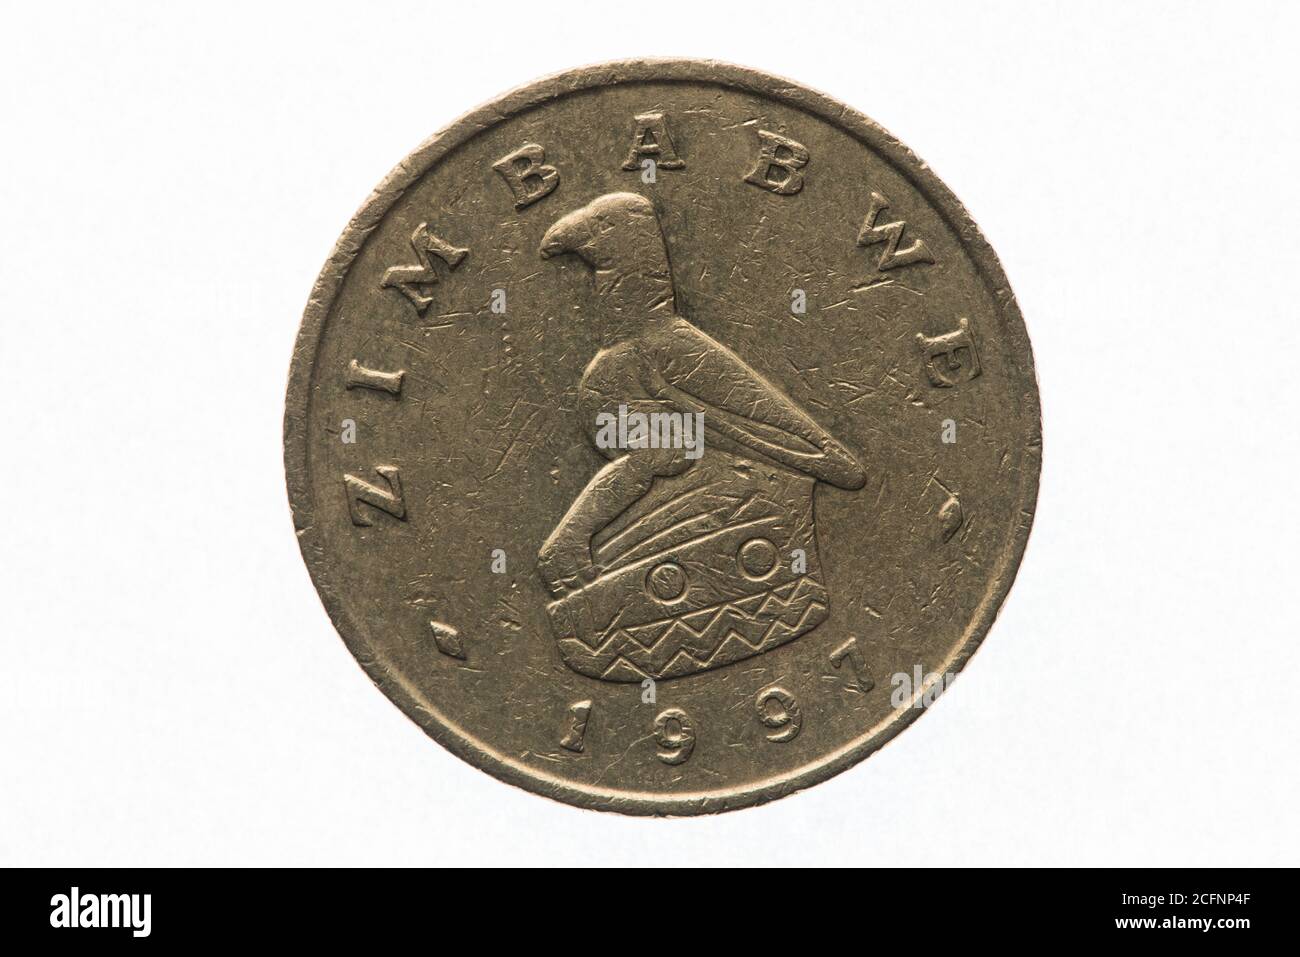 Une pièce de 2 dollars du Zimbabwe mettant en vedette l'oiseau du Zimbabwe, une icône nationale. Banque D'Images